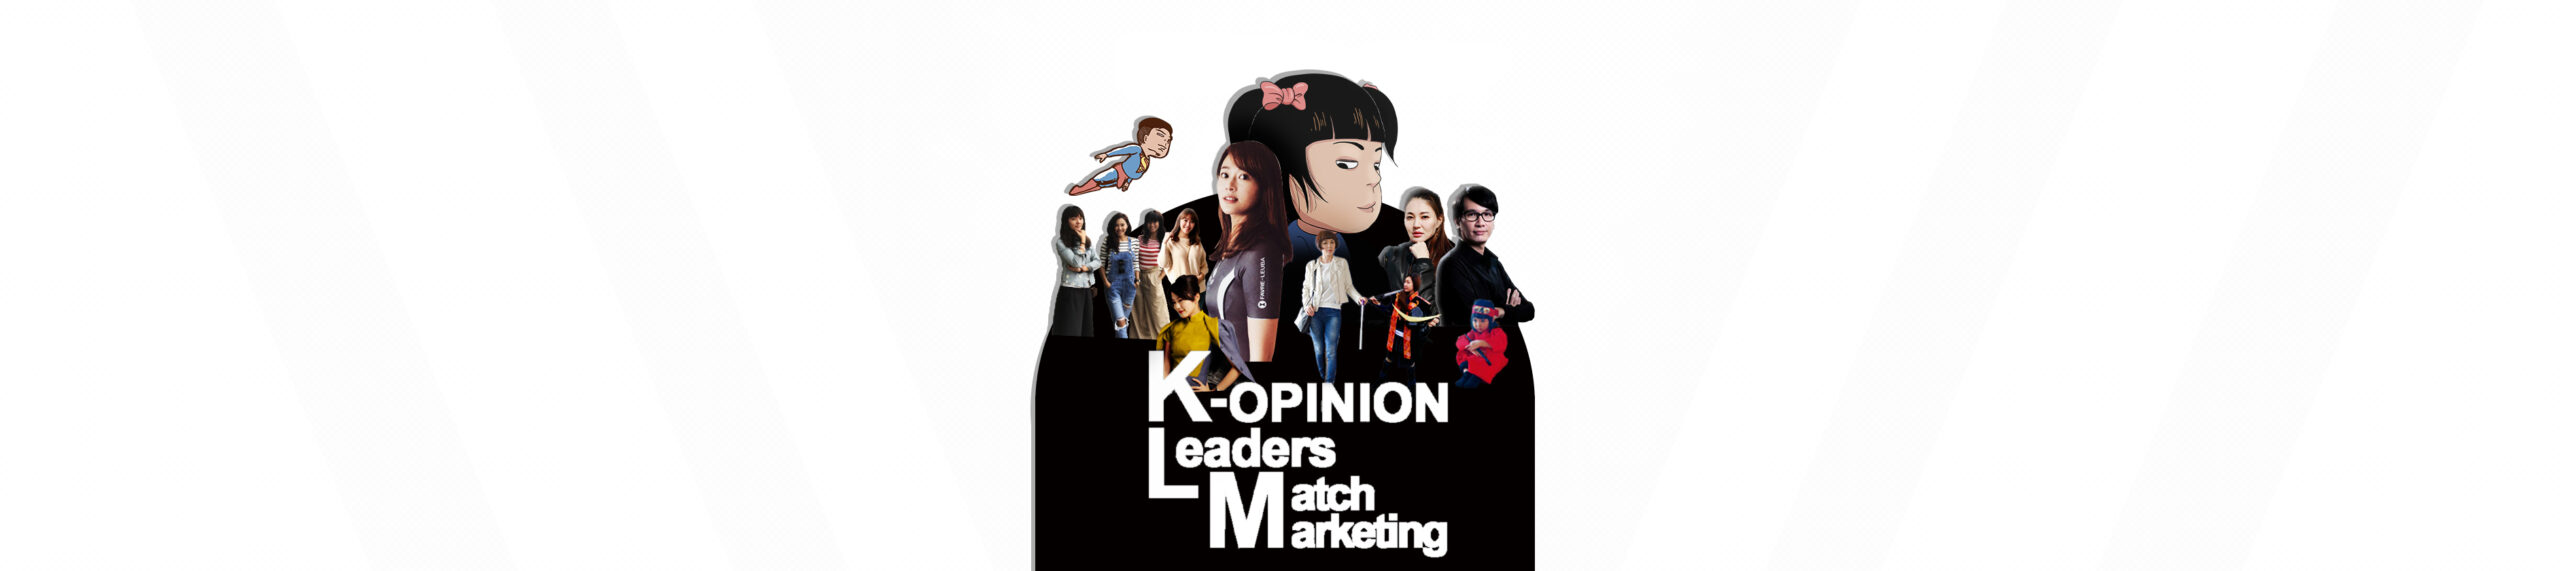 古豪數位行銷有限公司 | K-Opinion Leaders Match Marketing